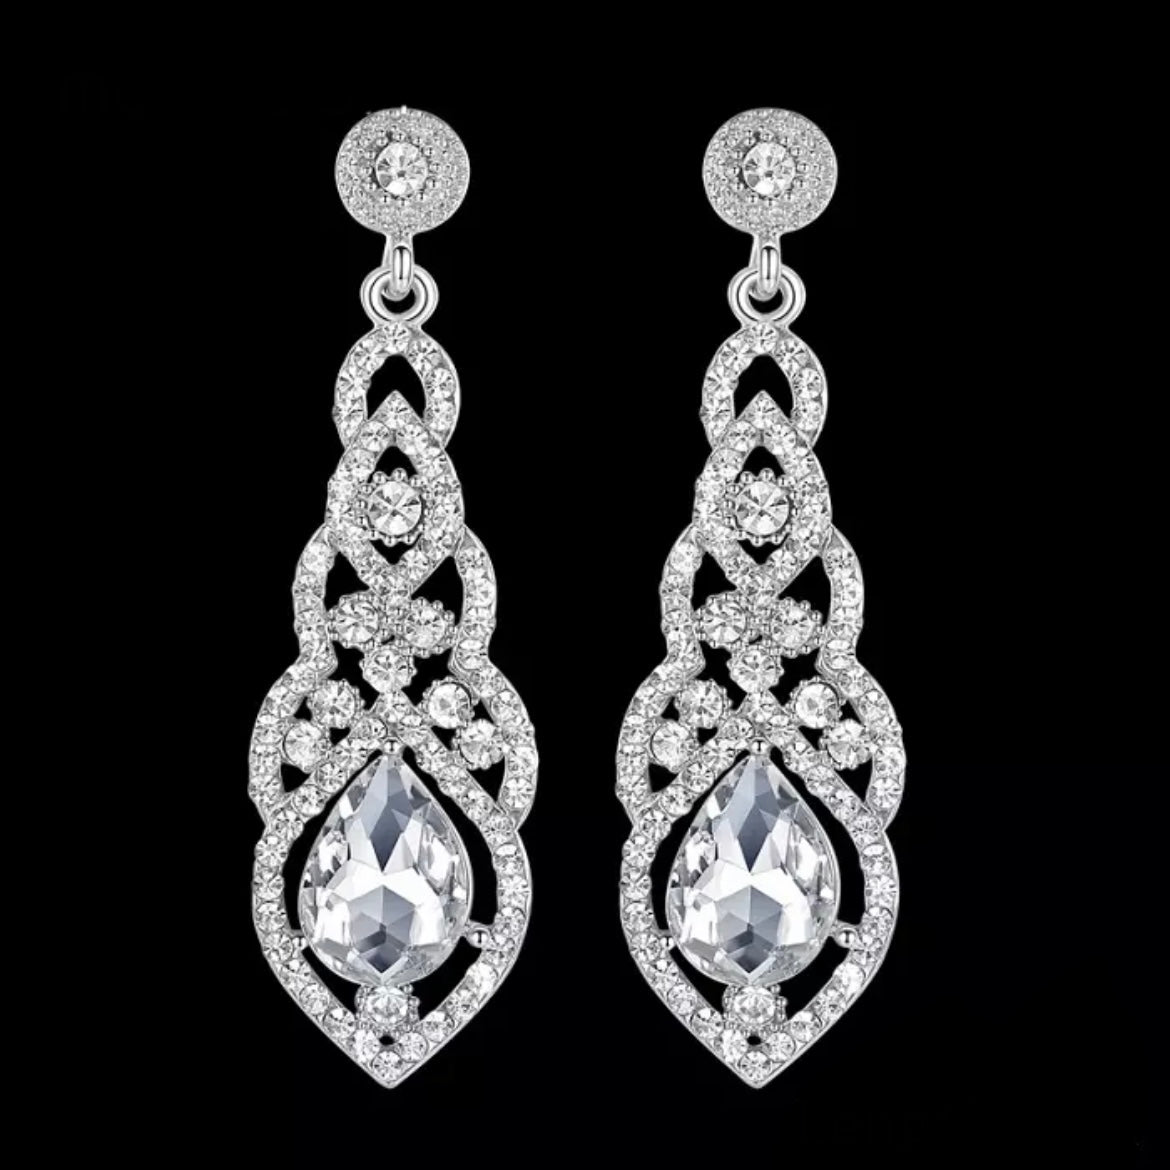 Great Gatsby 1920's Crystal Rhinestone Drop Earrings - Silver (Style 3)